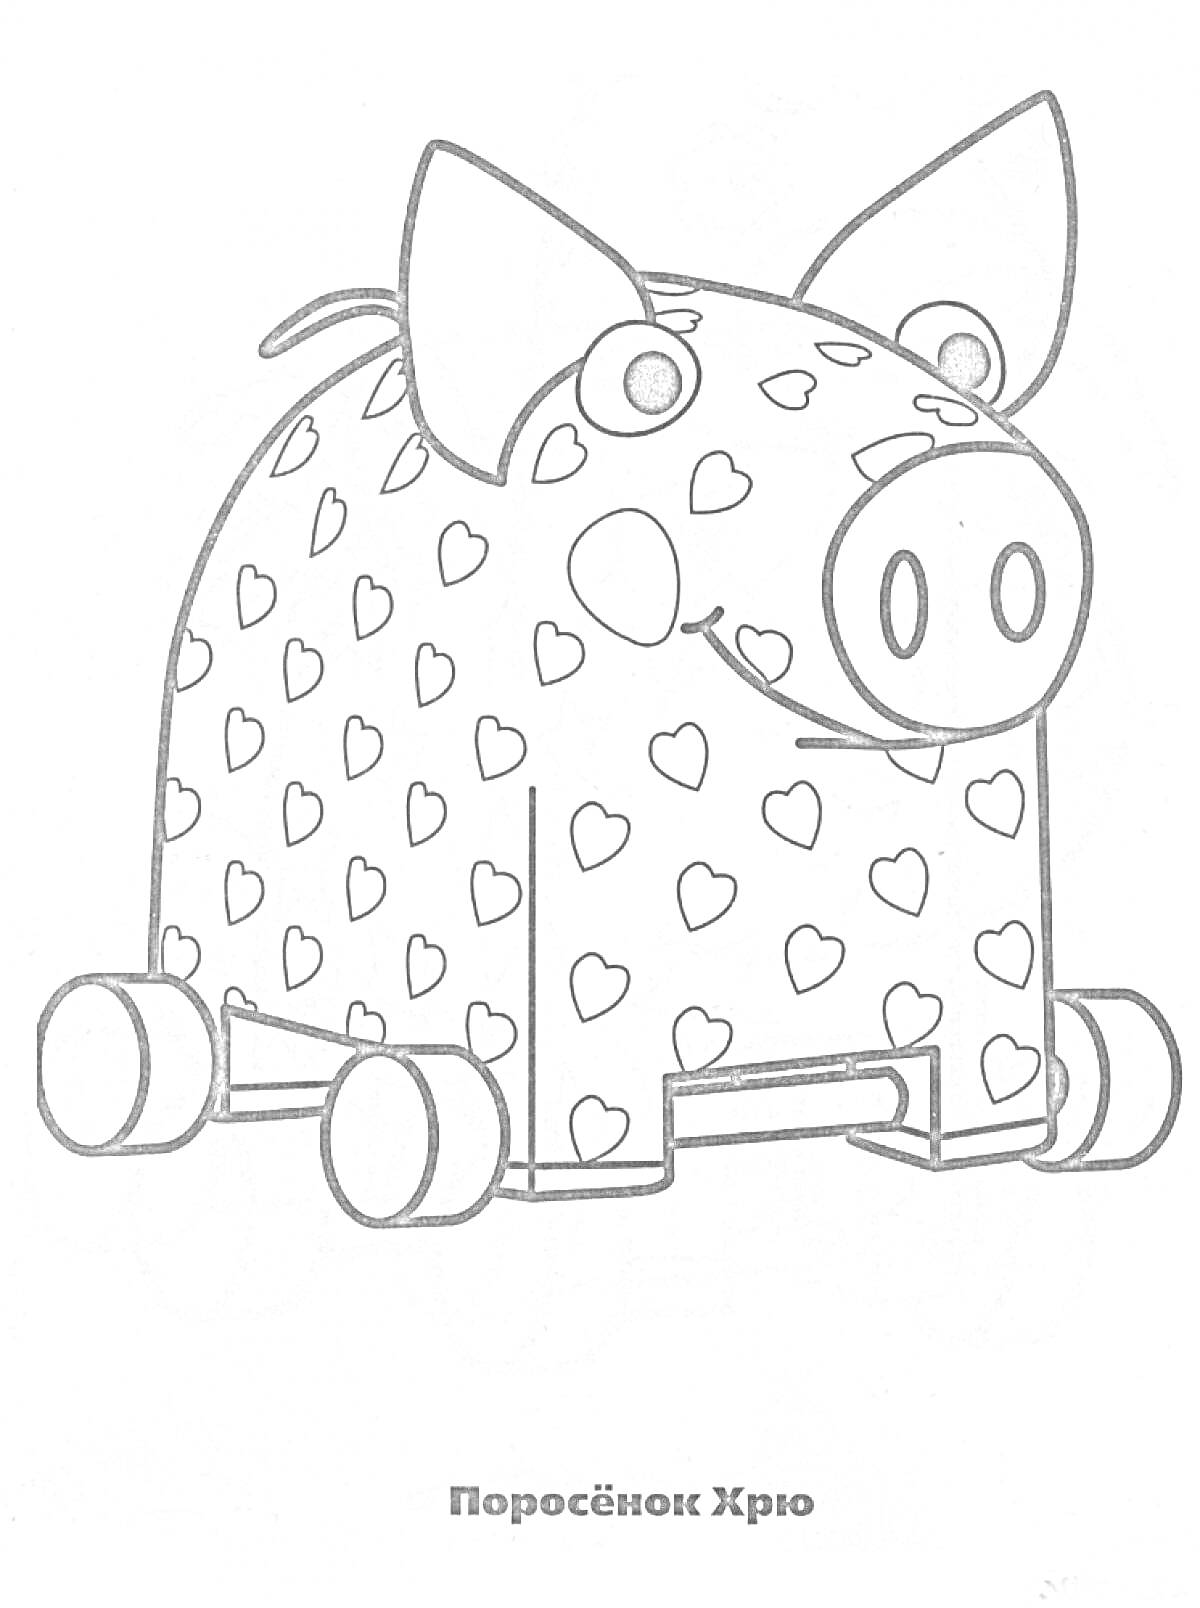 Раскраска Поросёнок Хрю с большими ушами, круглыми глазами и сердцами по всему телу, стоящий на колесах